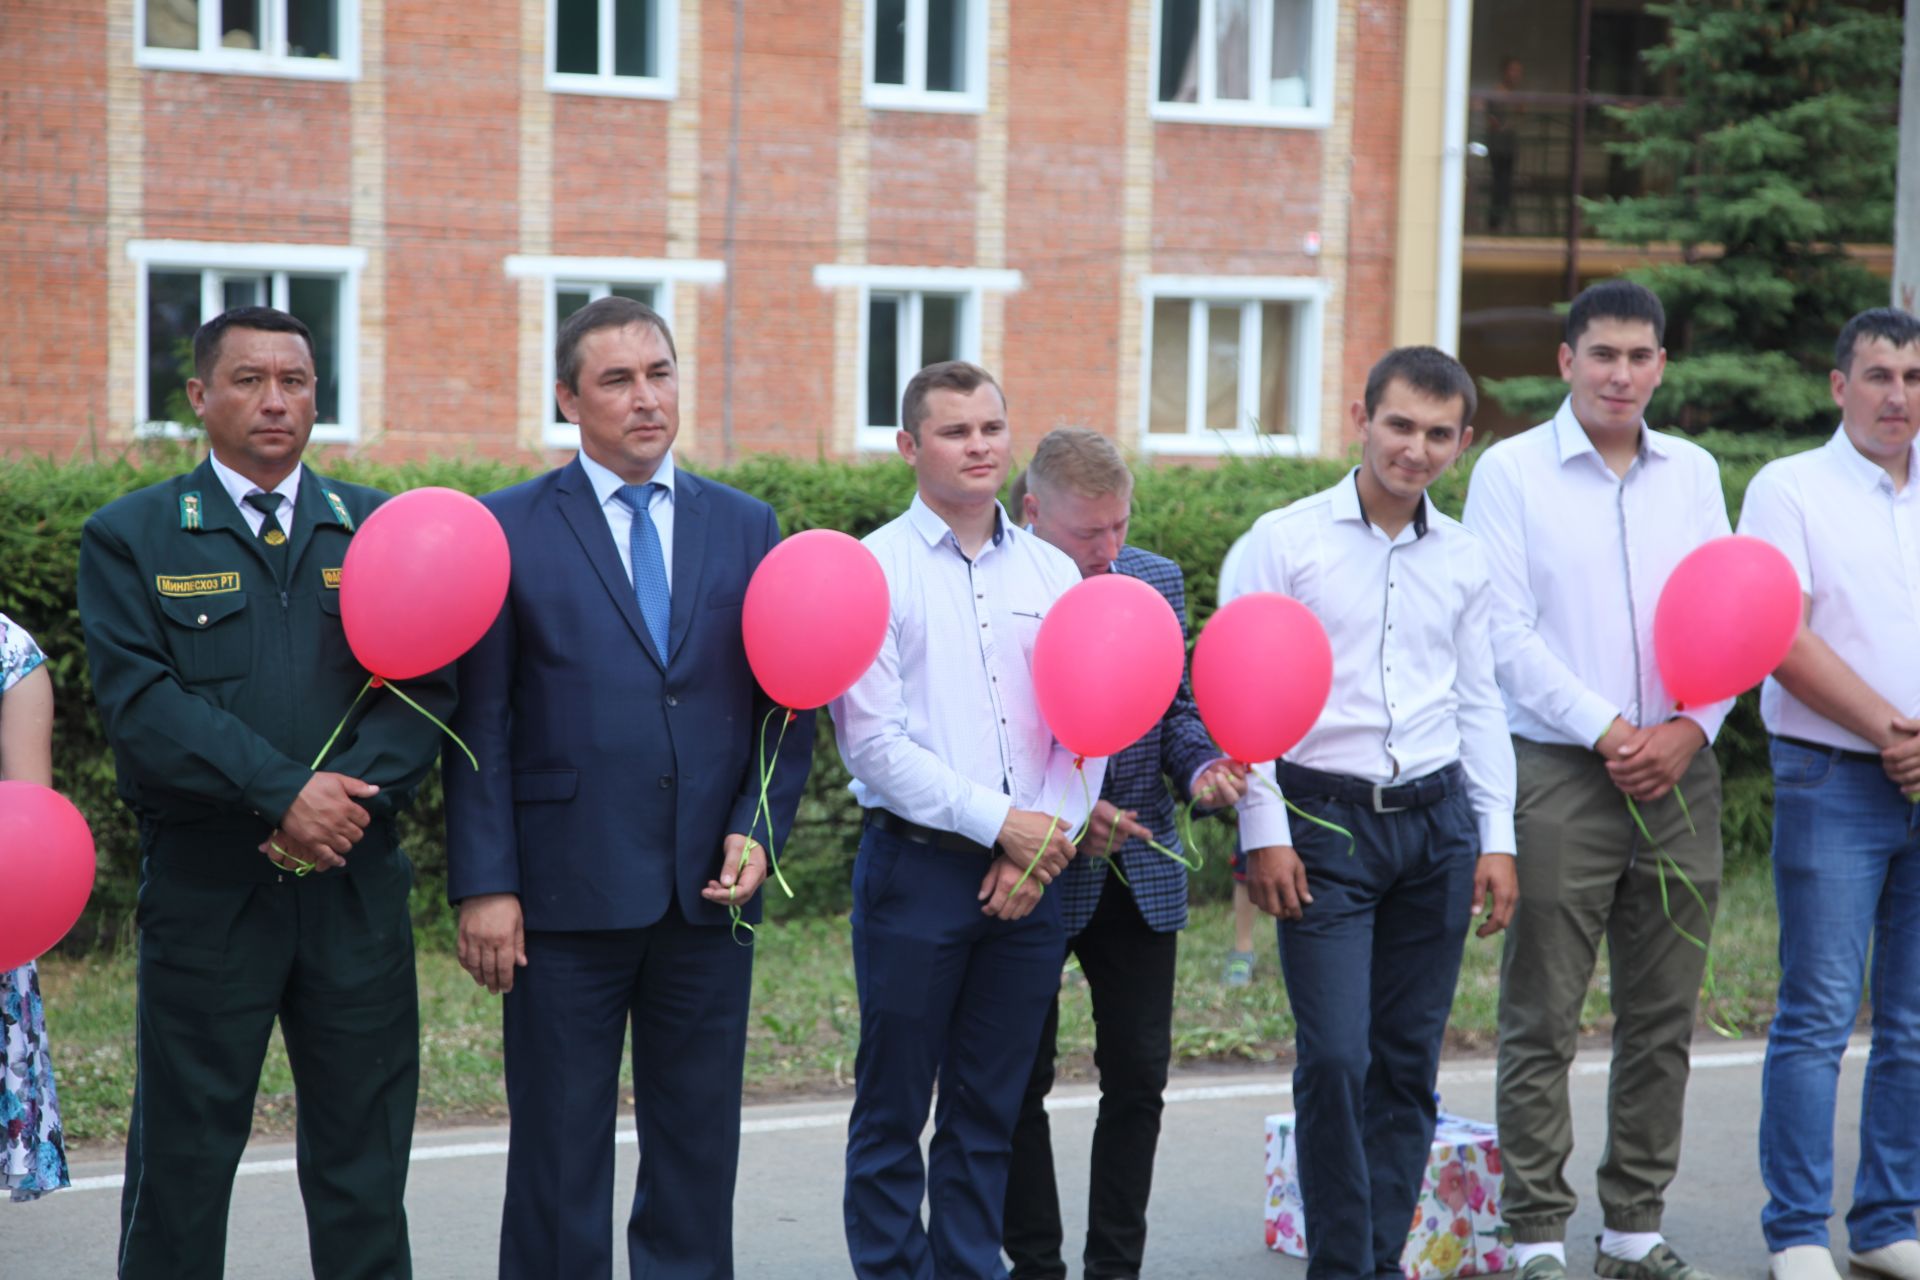 Фото: Равиль Кузюров вручил дипломы выпускникам Лубянского лесотехнического колледжа